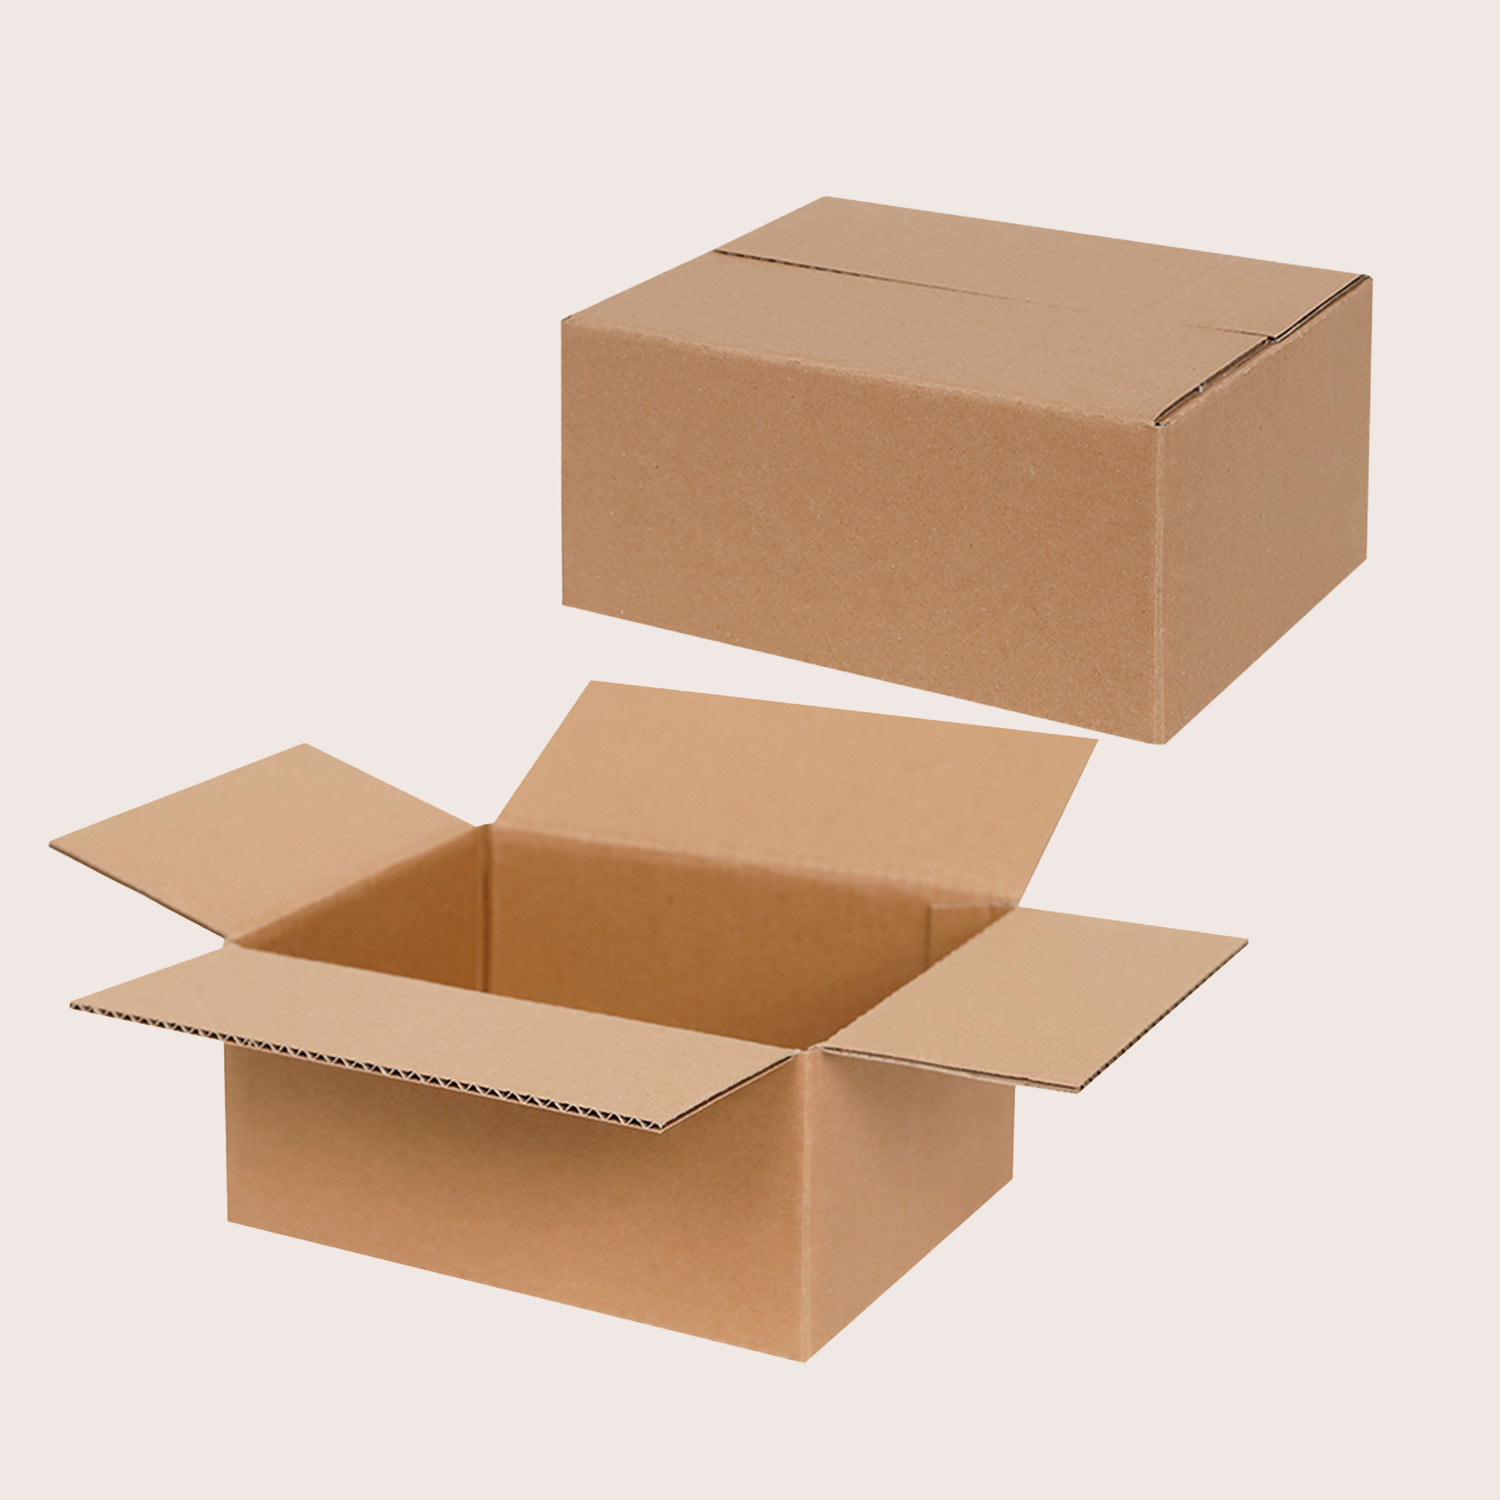 Skládací krabice z vlnité lepenky v malých standardních rozměrech